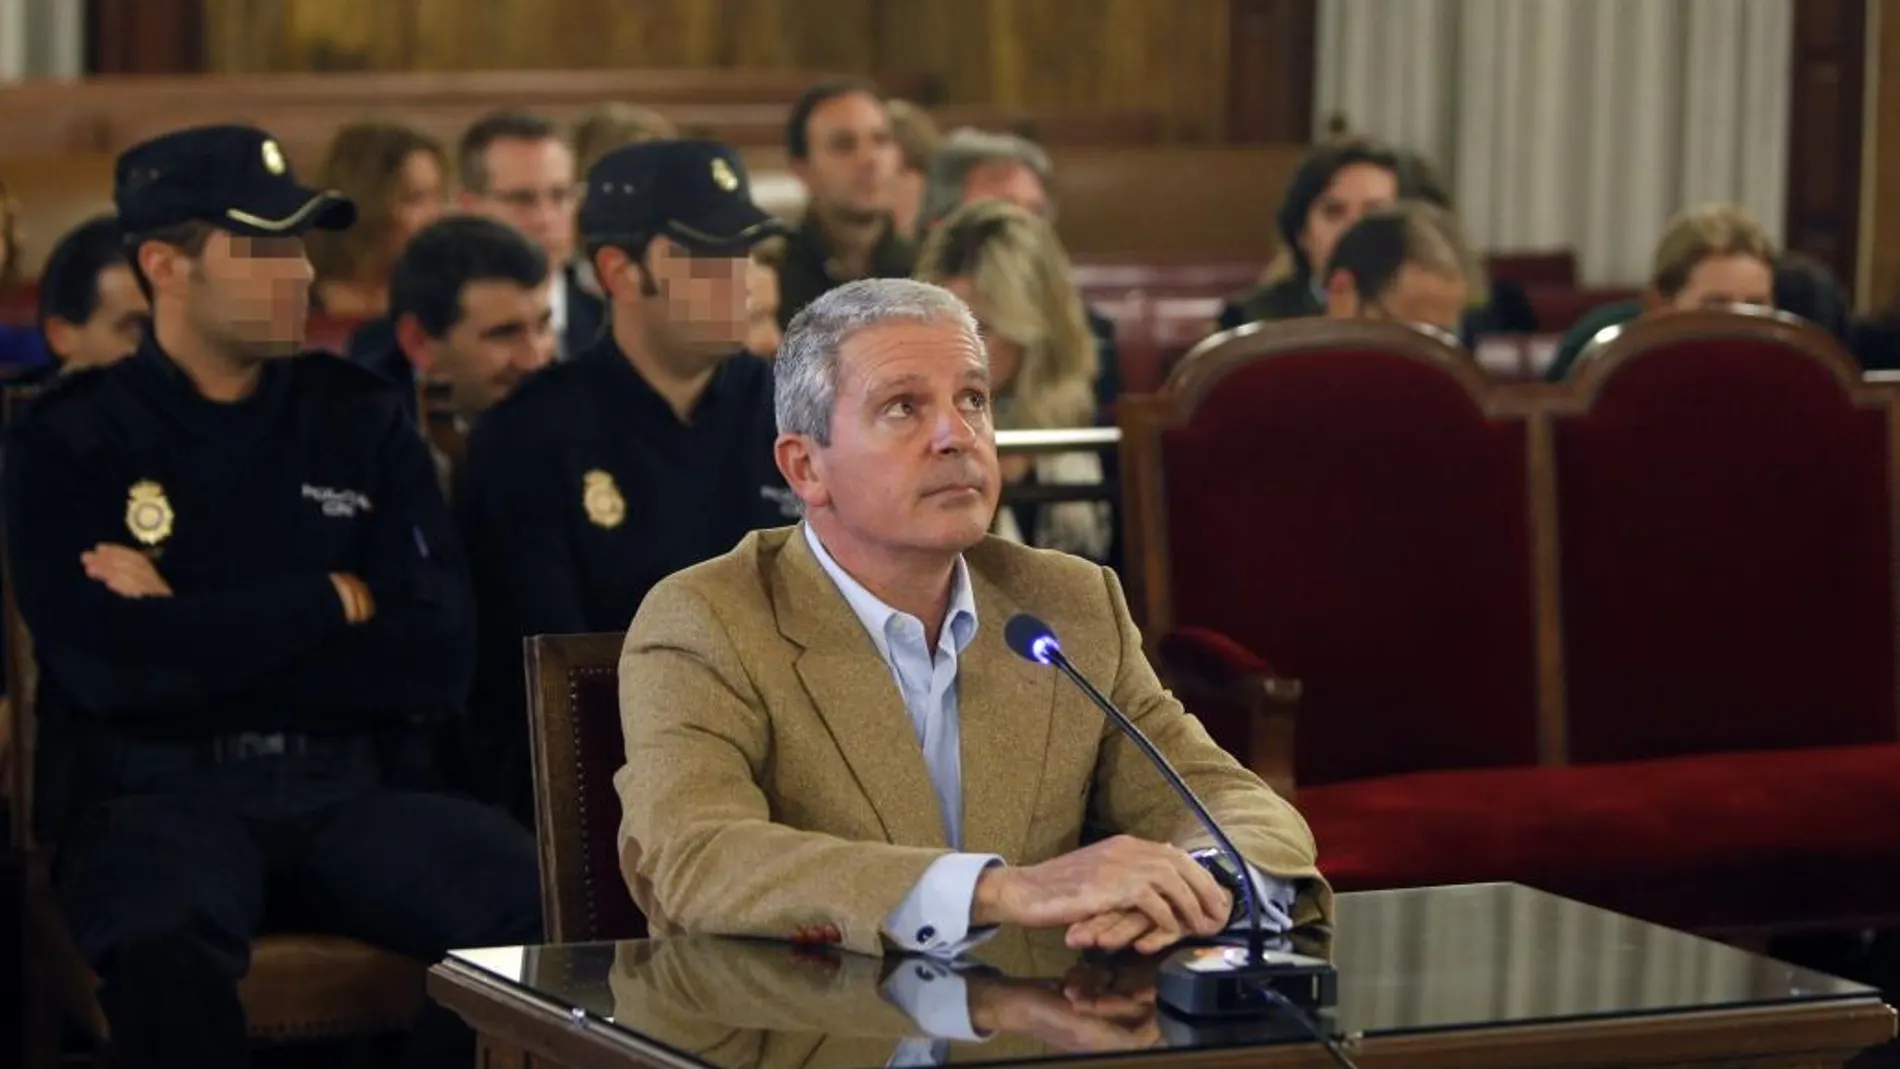 Pablo Crespo, considerado uno de los cabecillas de la trama corrupta del caso Gürtel, durante una sesión del juicio por el denominado caso de los trajes